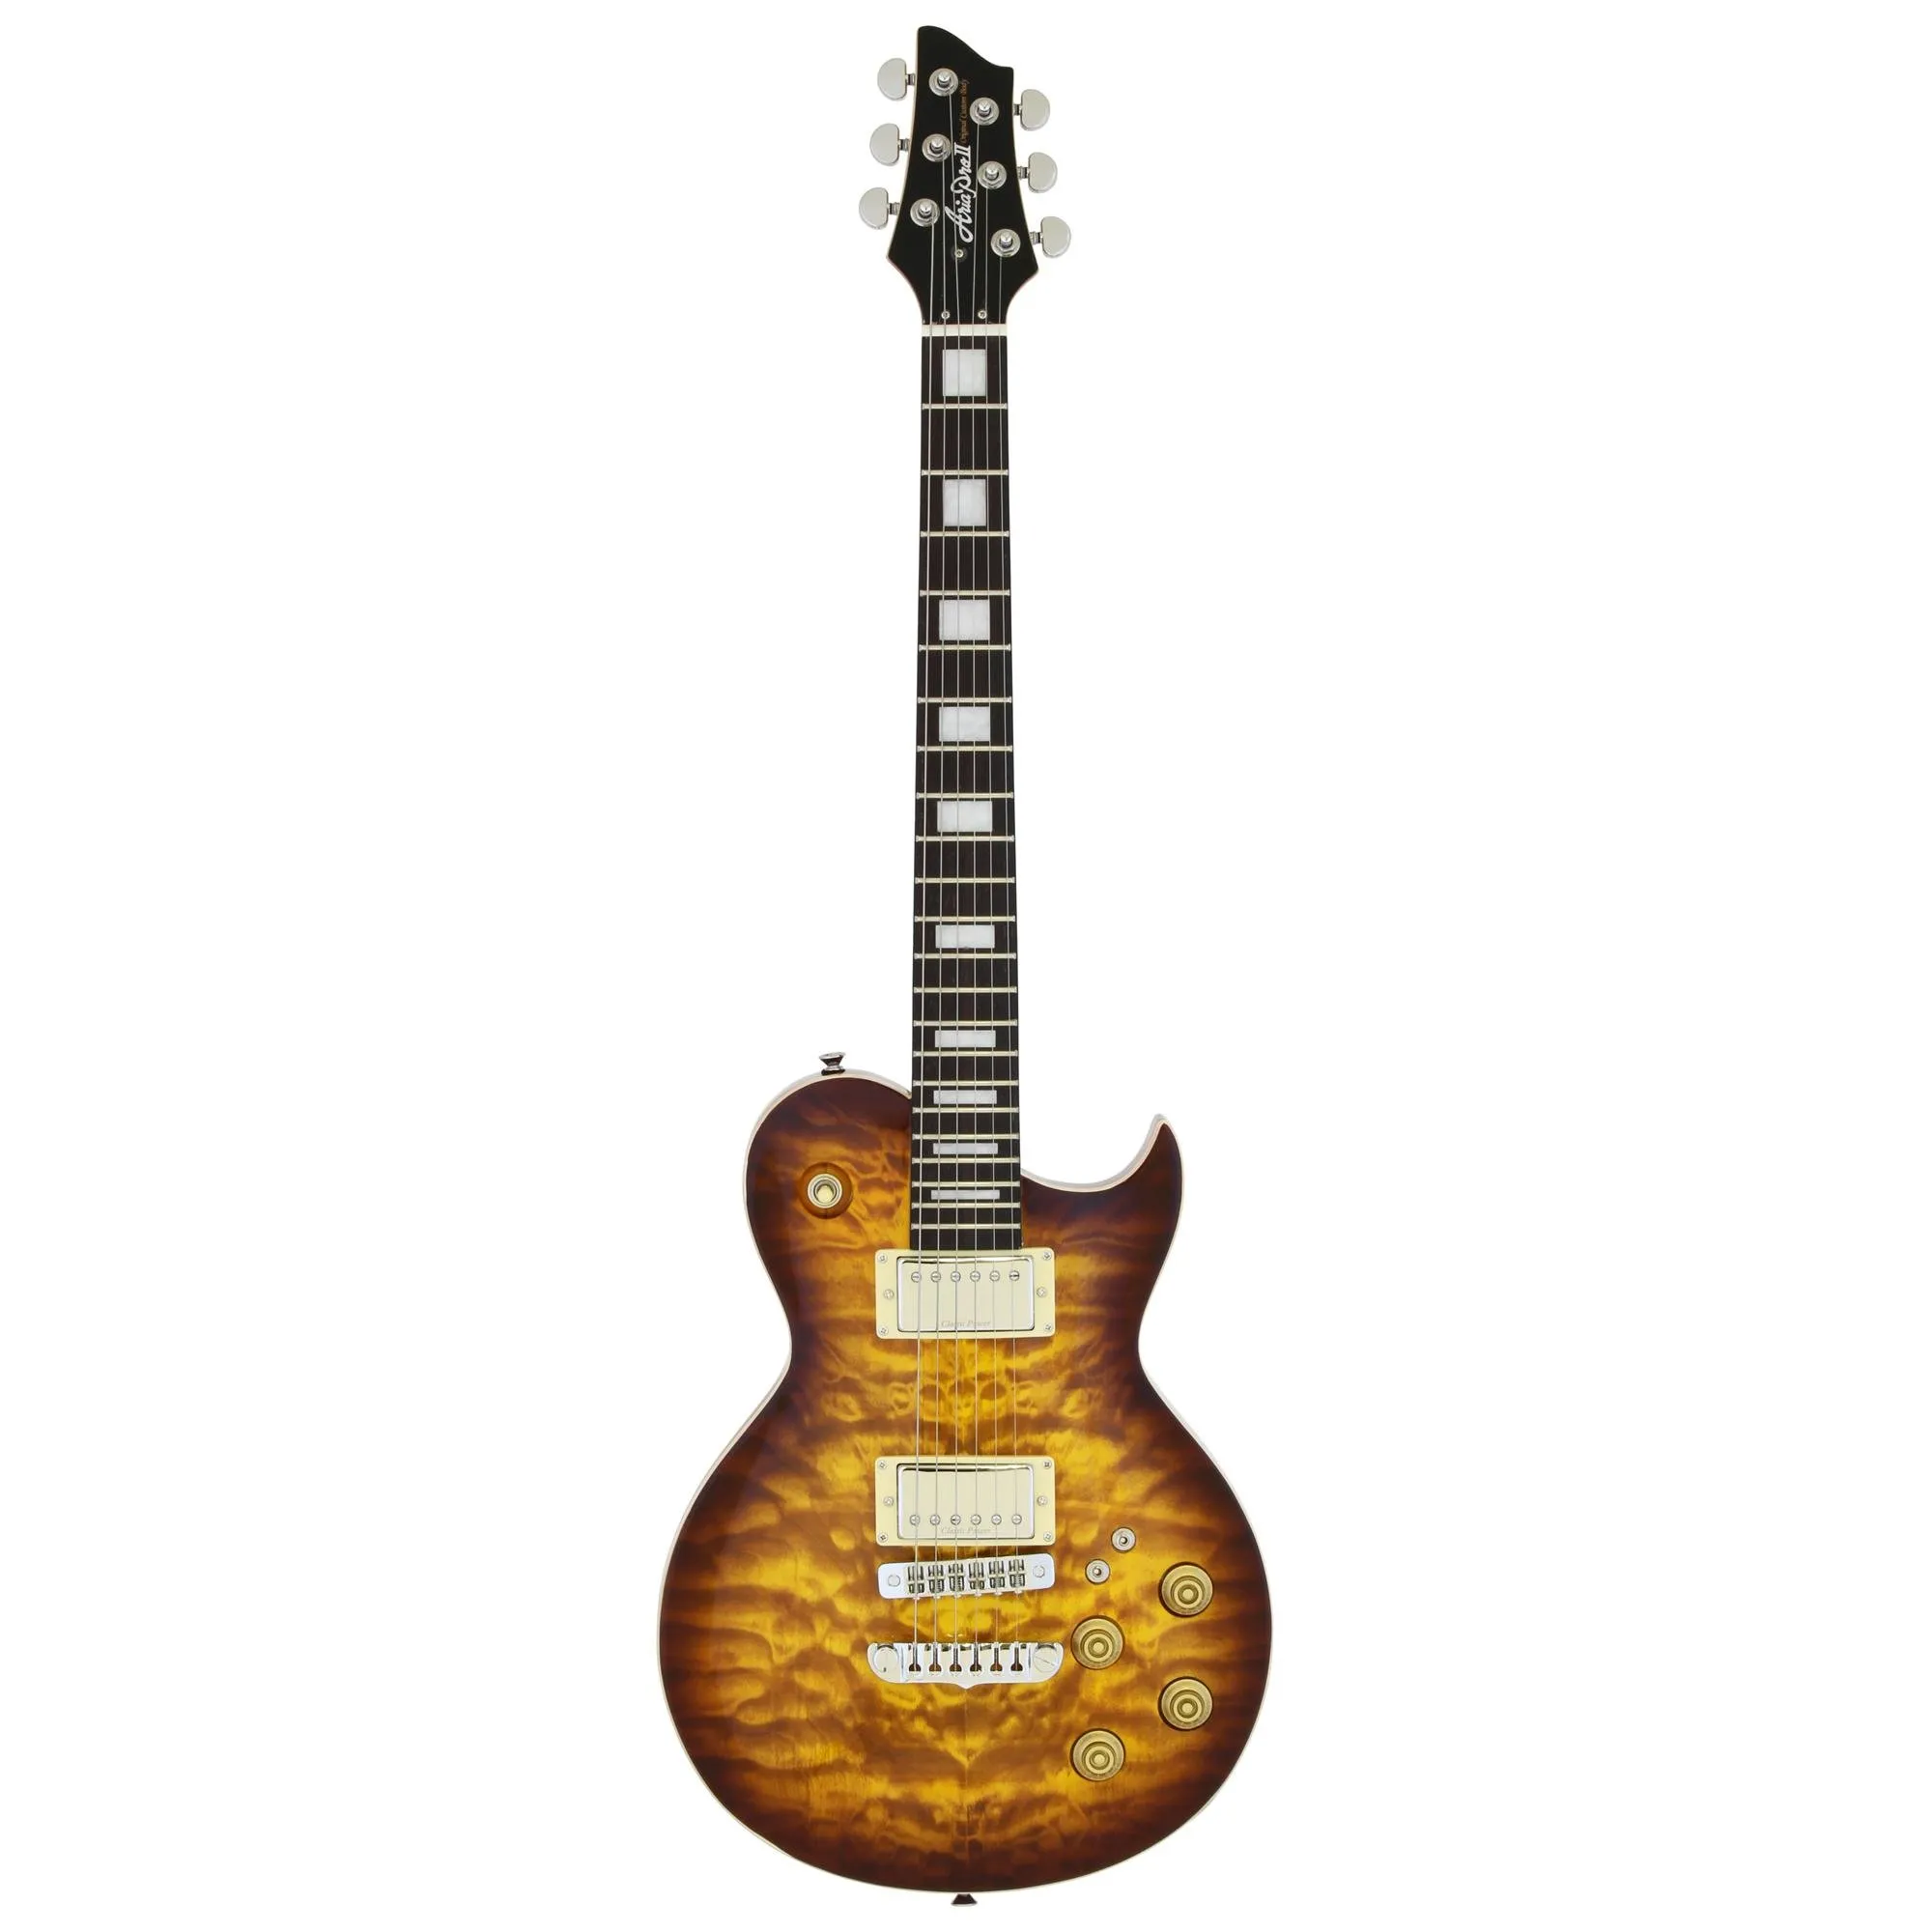 Guitarra Aria Pro II PE-480 Brown Sunburst por 3.548,00 à vista no boleto/pix ou parcele em até 12x sem juros. Compre na loja Mundomax!